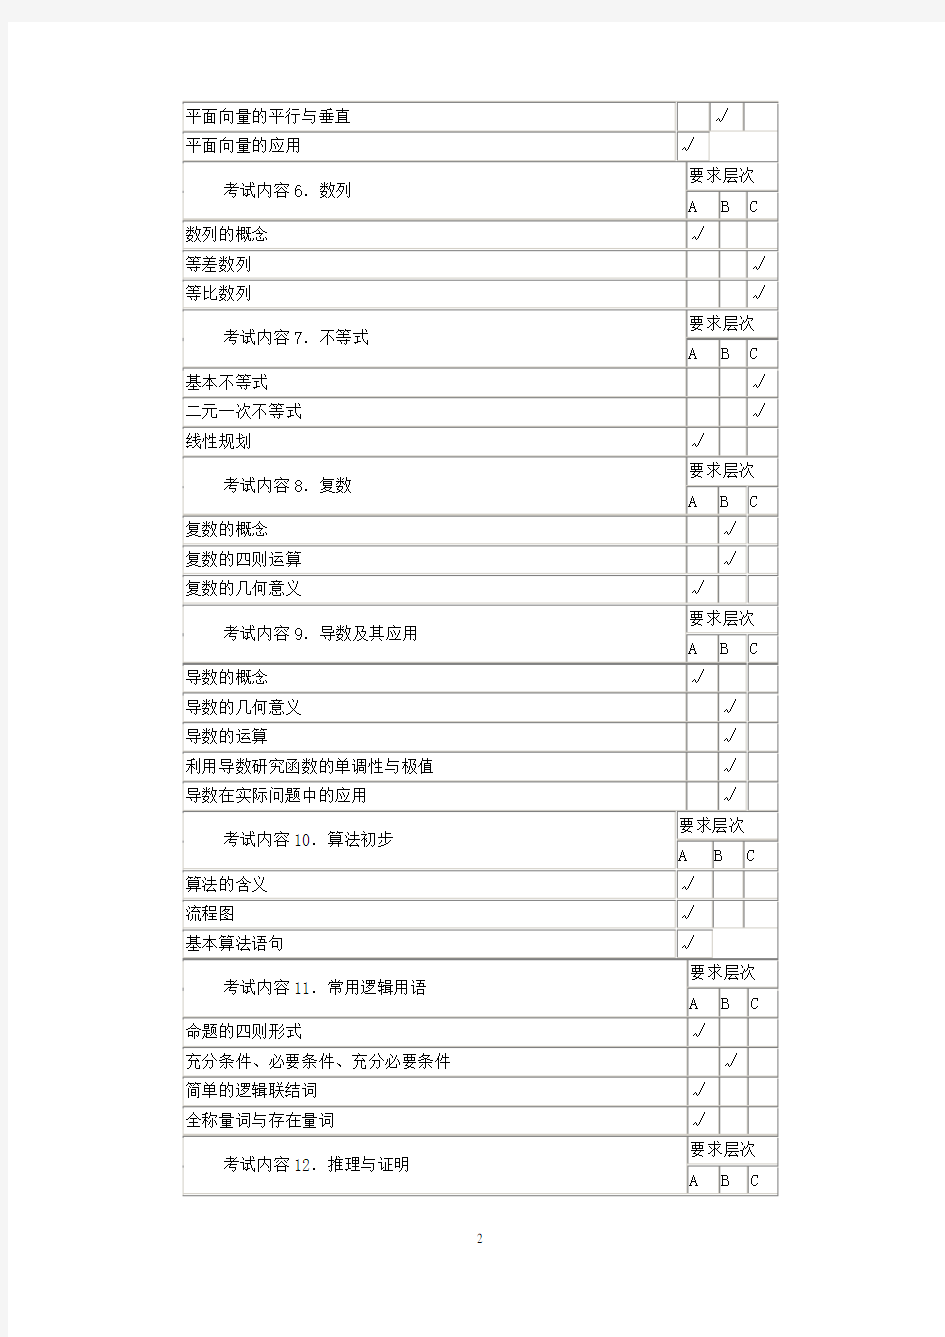 (完整)江苏高考数学考点表